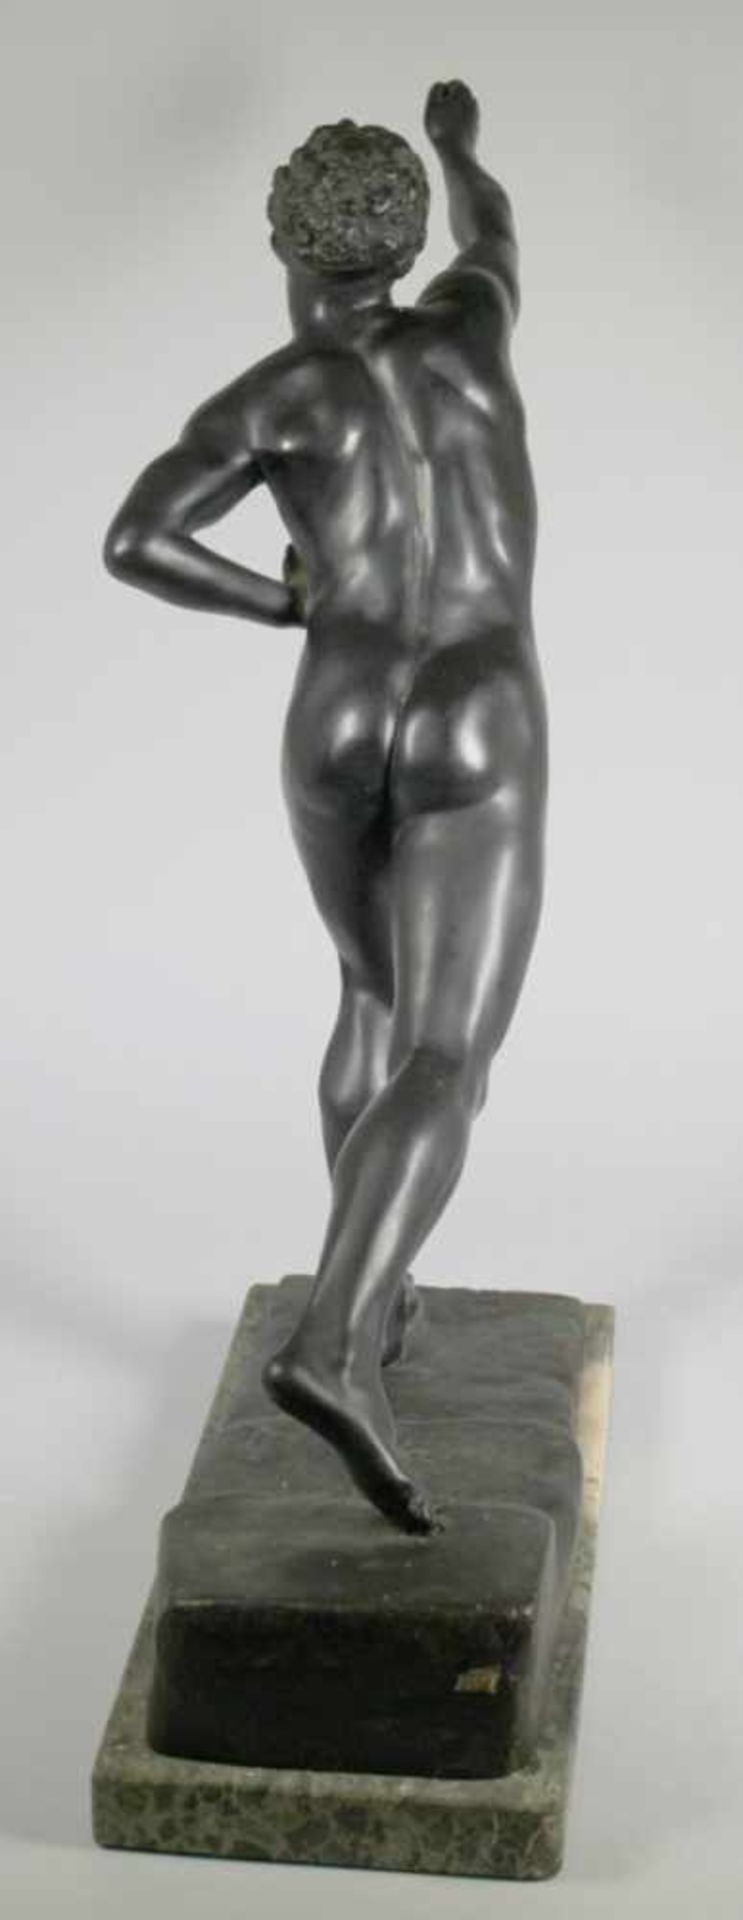 Bronze-Plastik, "Athlet", anonymer Bildhauer um 1900, vollplastische, naturalistischeDarstellung - Bild 2 aus 2